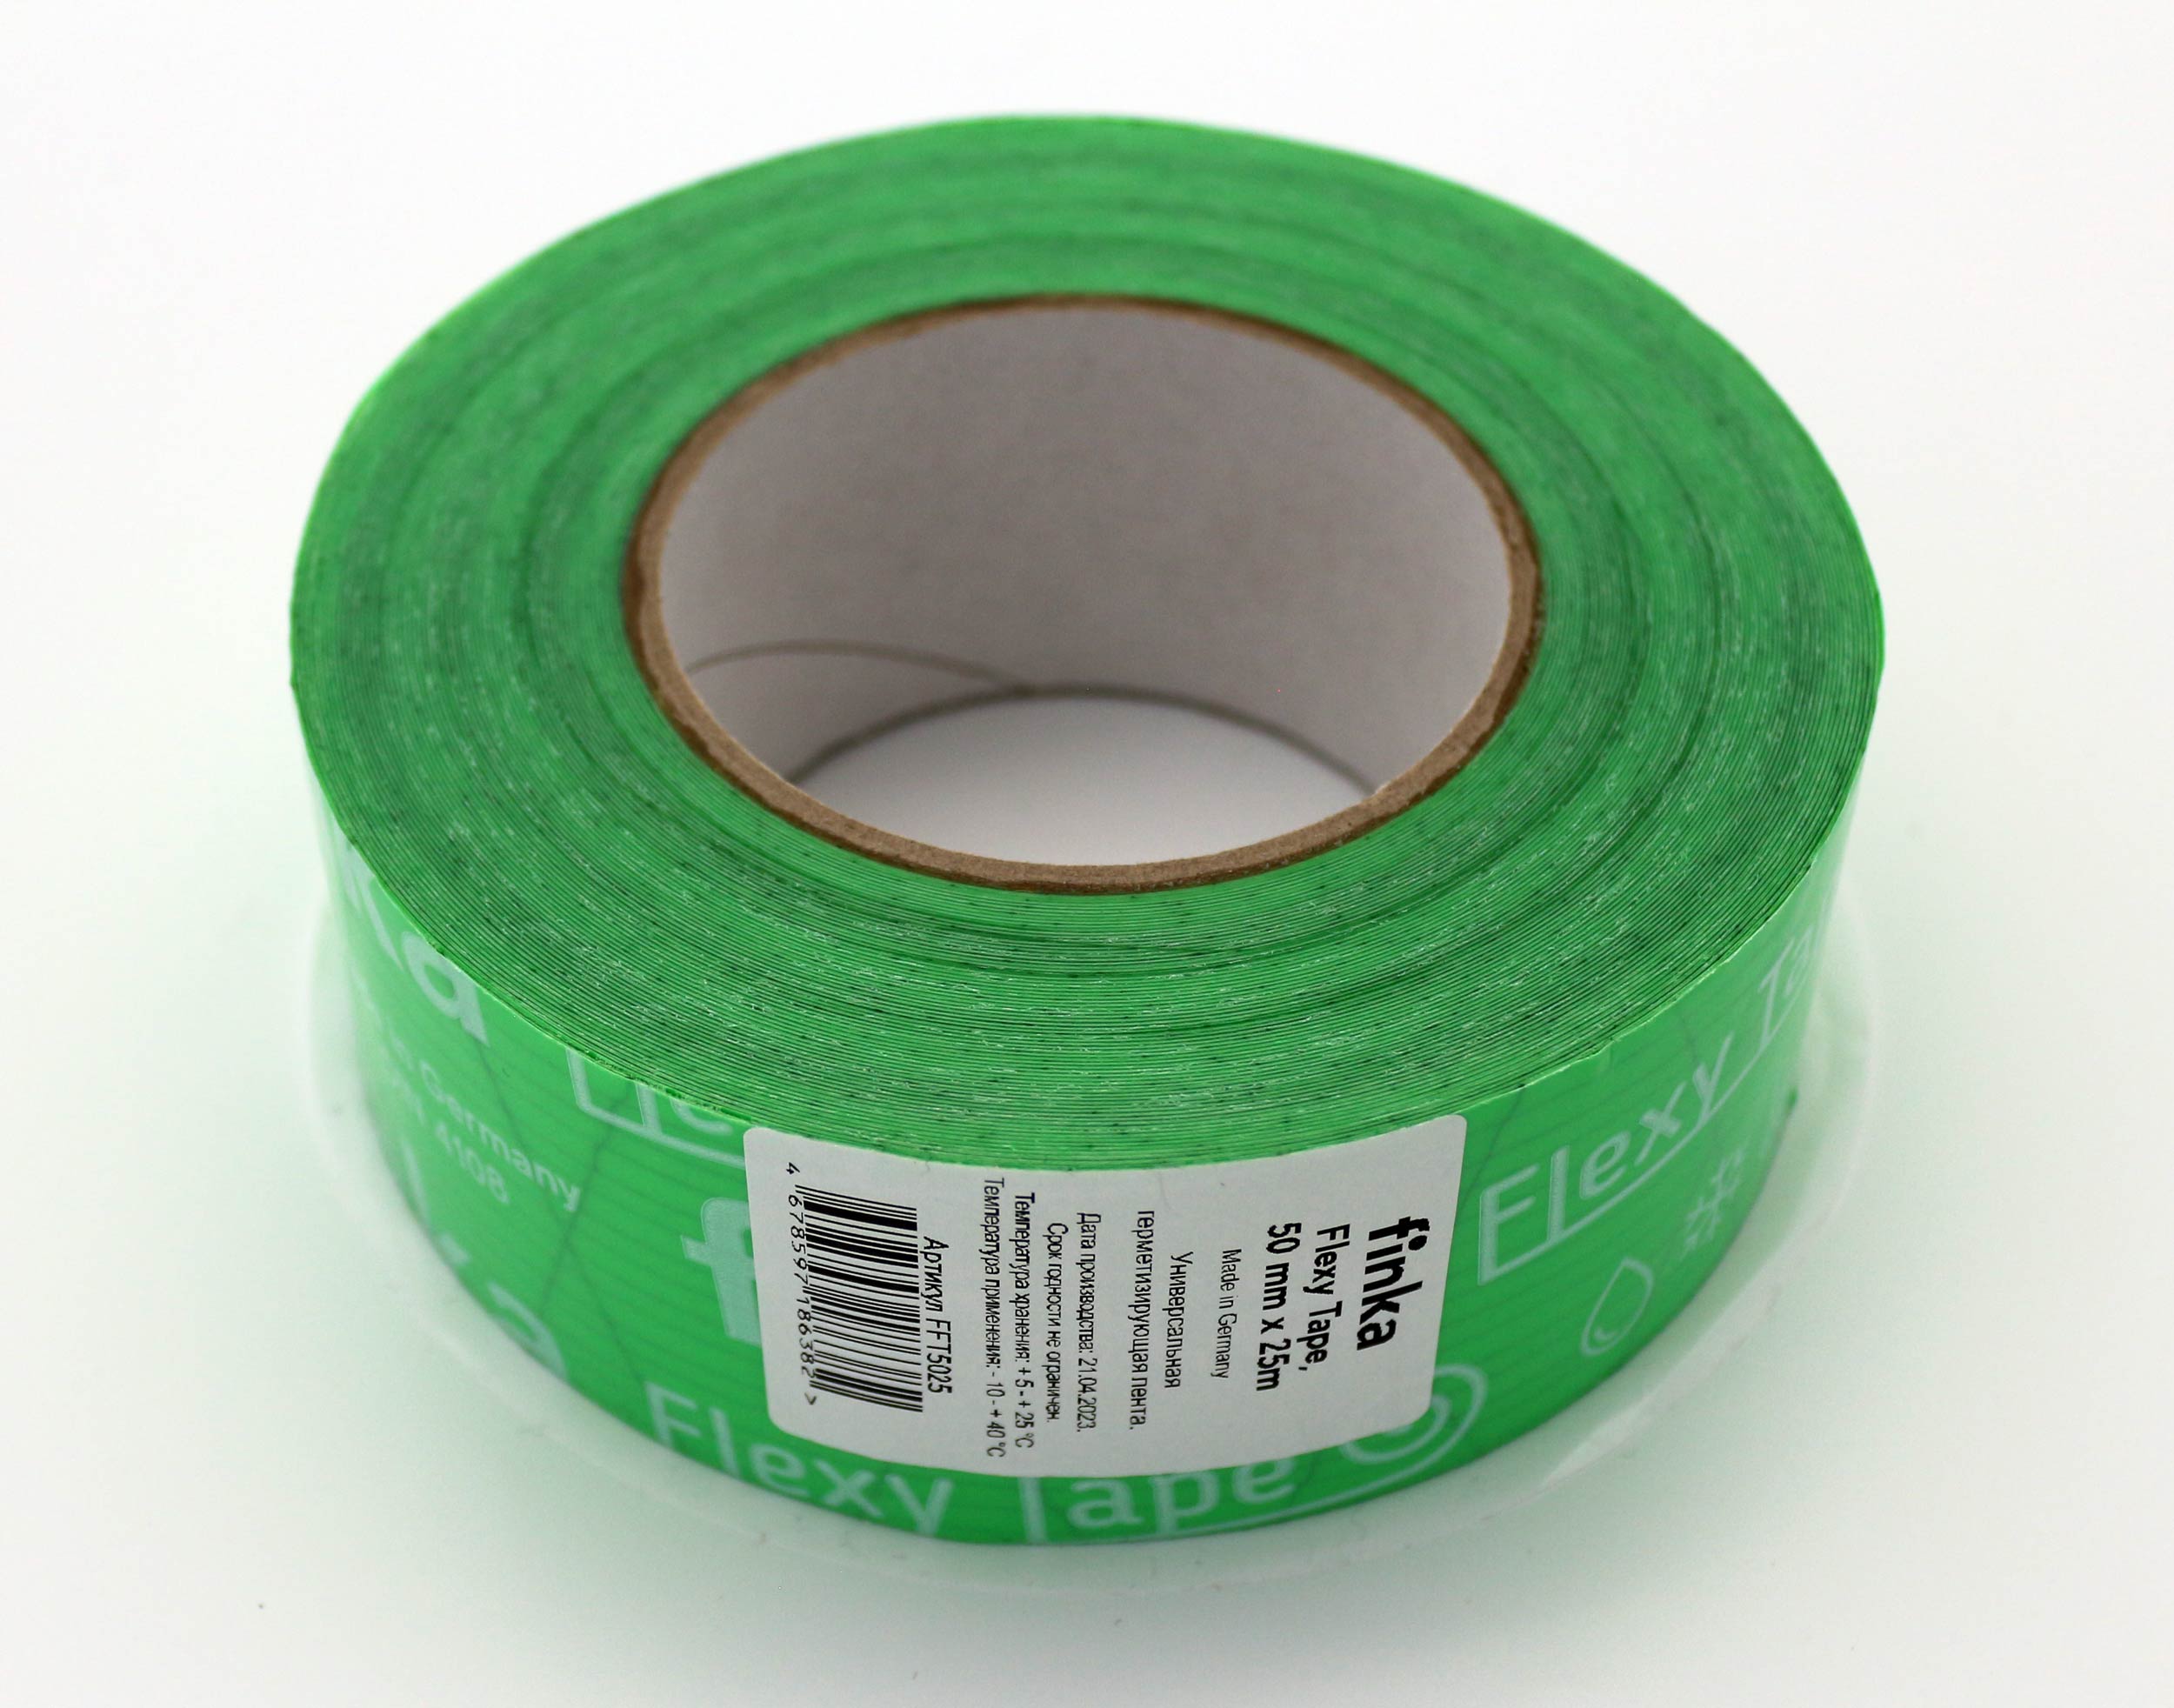 Finka Flexy Tape 50мм x 25м односторонняя соединительная лента скотч для гидроизоляции, пароизоляции и ветрозащиты